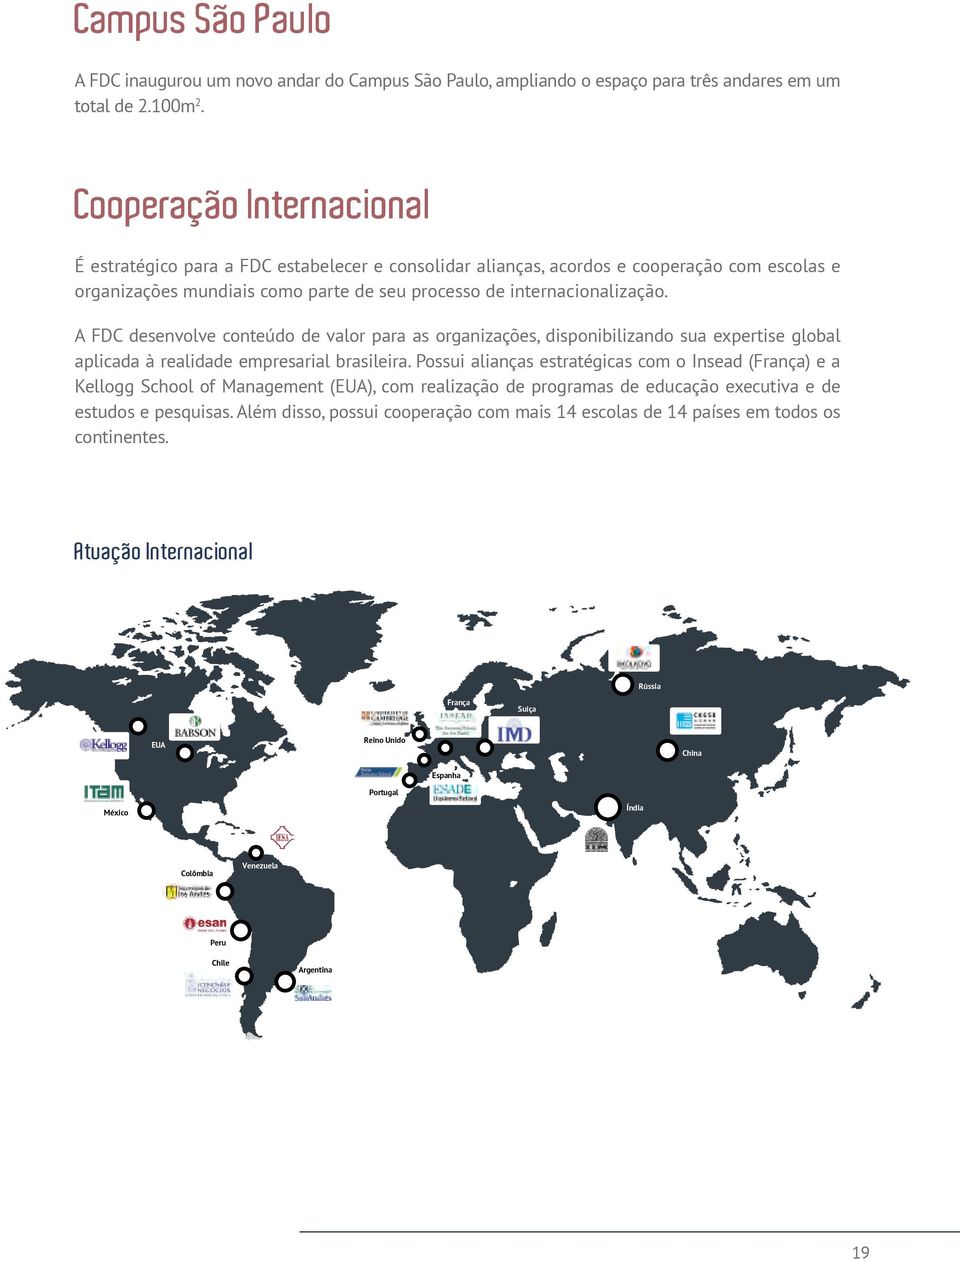 A FDC desenvolve conteúdo de valor para as organizações, disponibilizando sua expertise global aplicada à realidade empresarial brasileira.